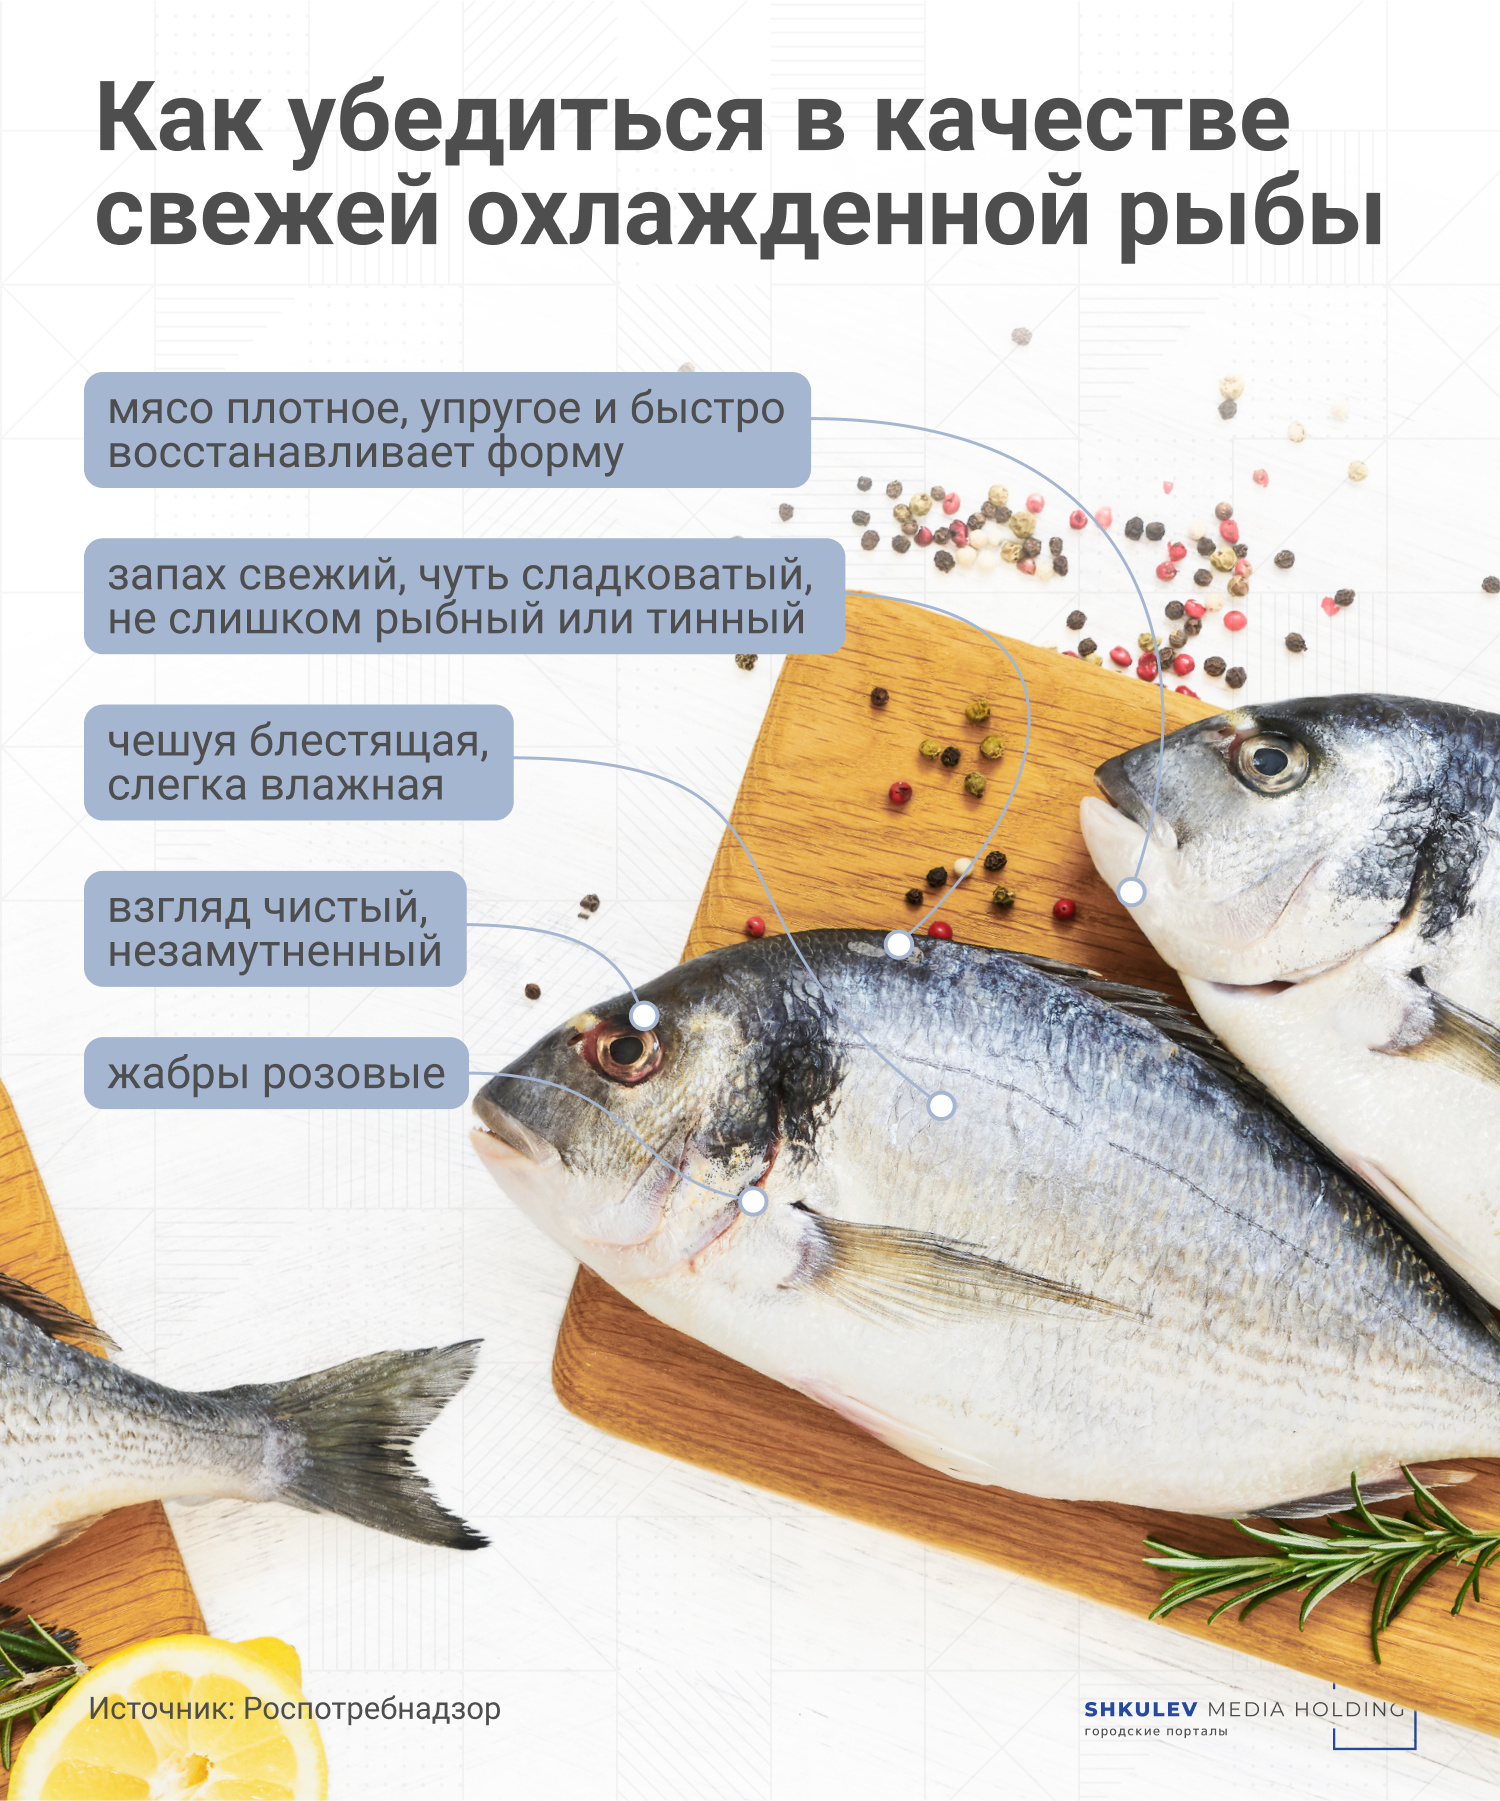 Определить качество и свежесть охлажденной рыбы можно на глаз